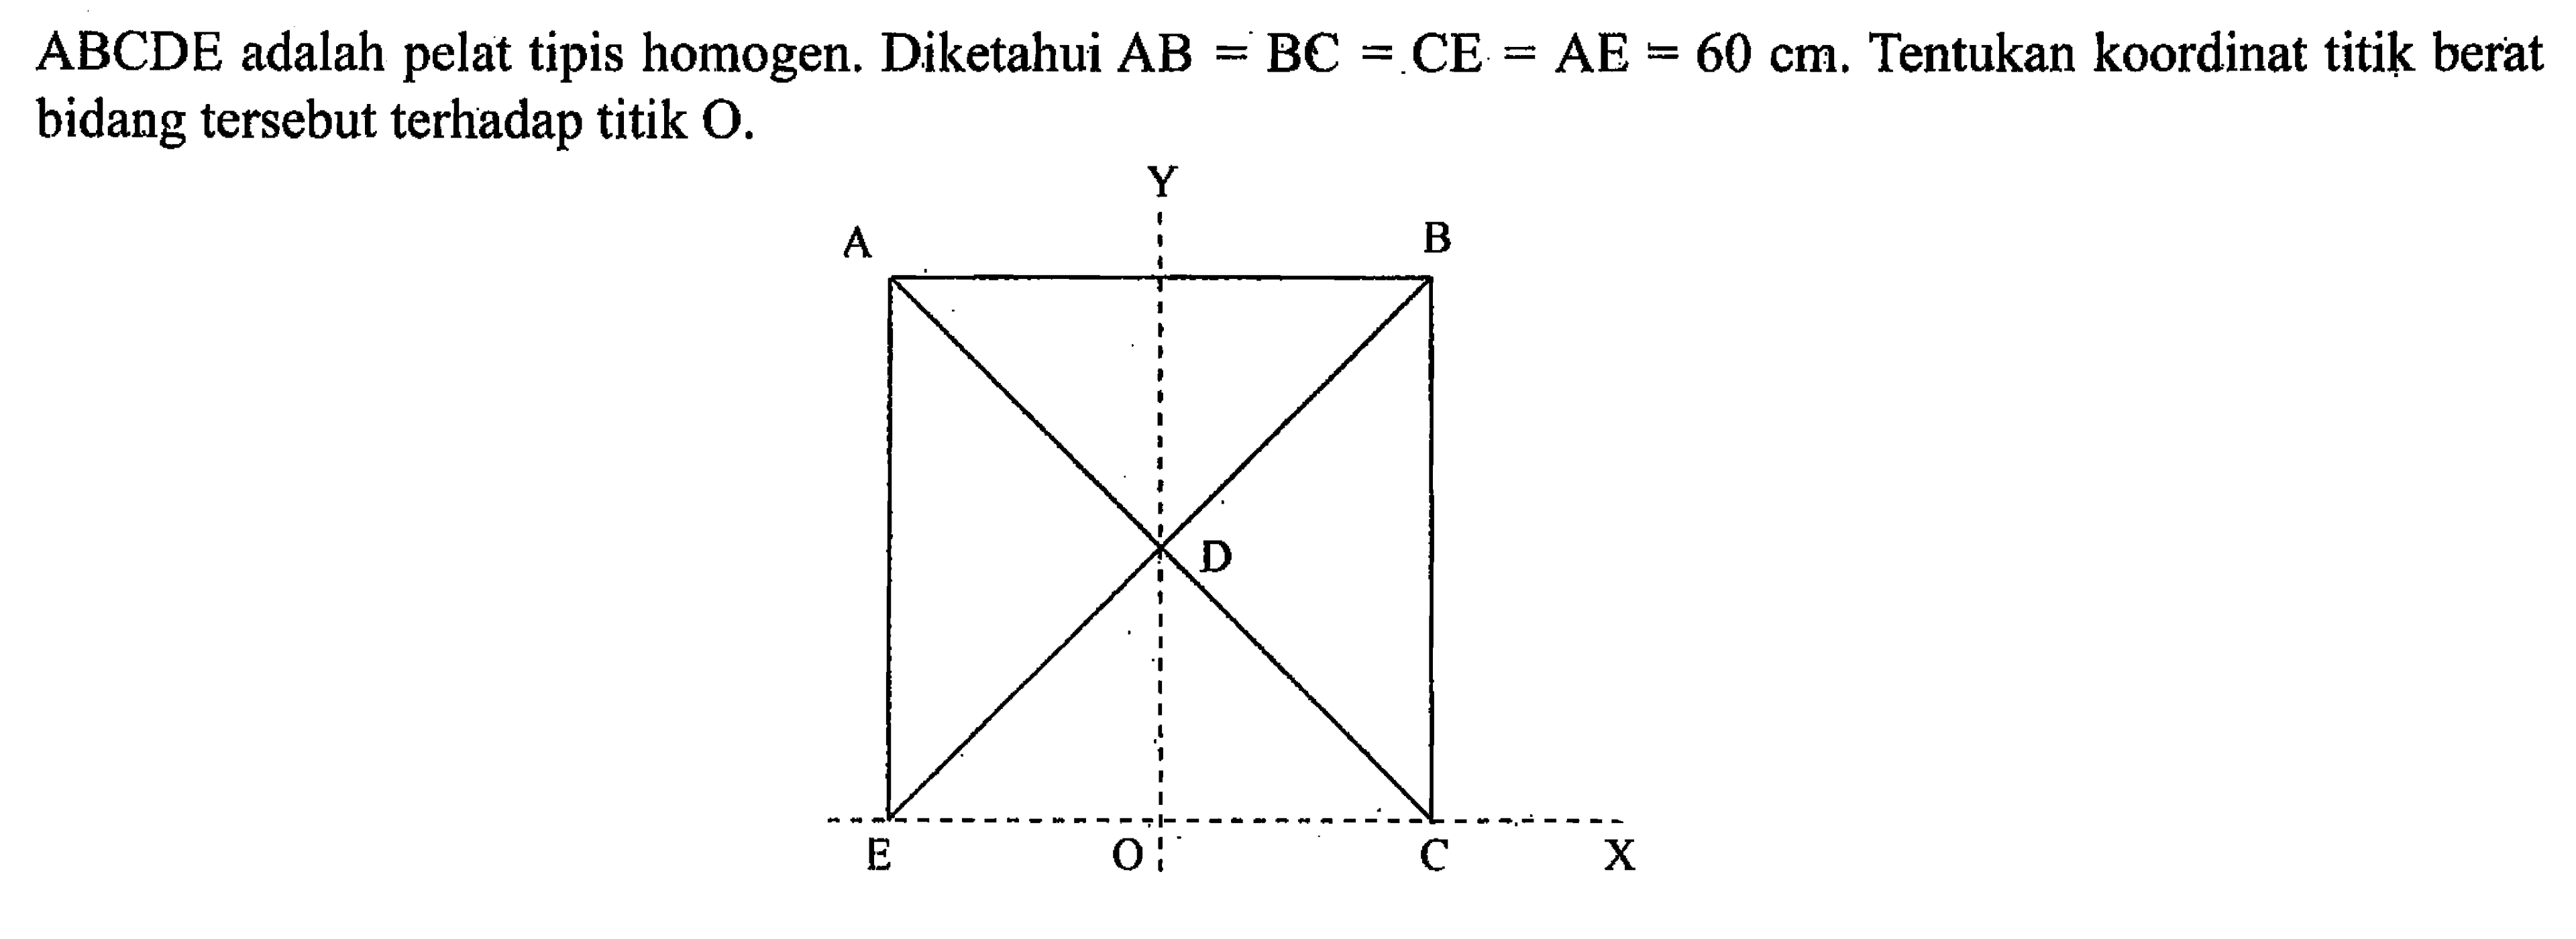 ABCDE adalah pelat tipis homogen. Diketahui AB = BC = CE = AE = 60 cm. Tentukan koordinat titik berat bidang tersebut terhadap titik O.